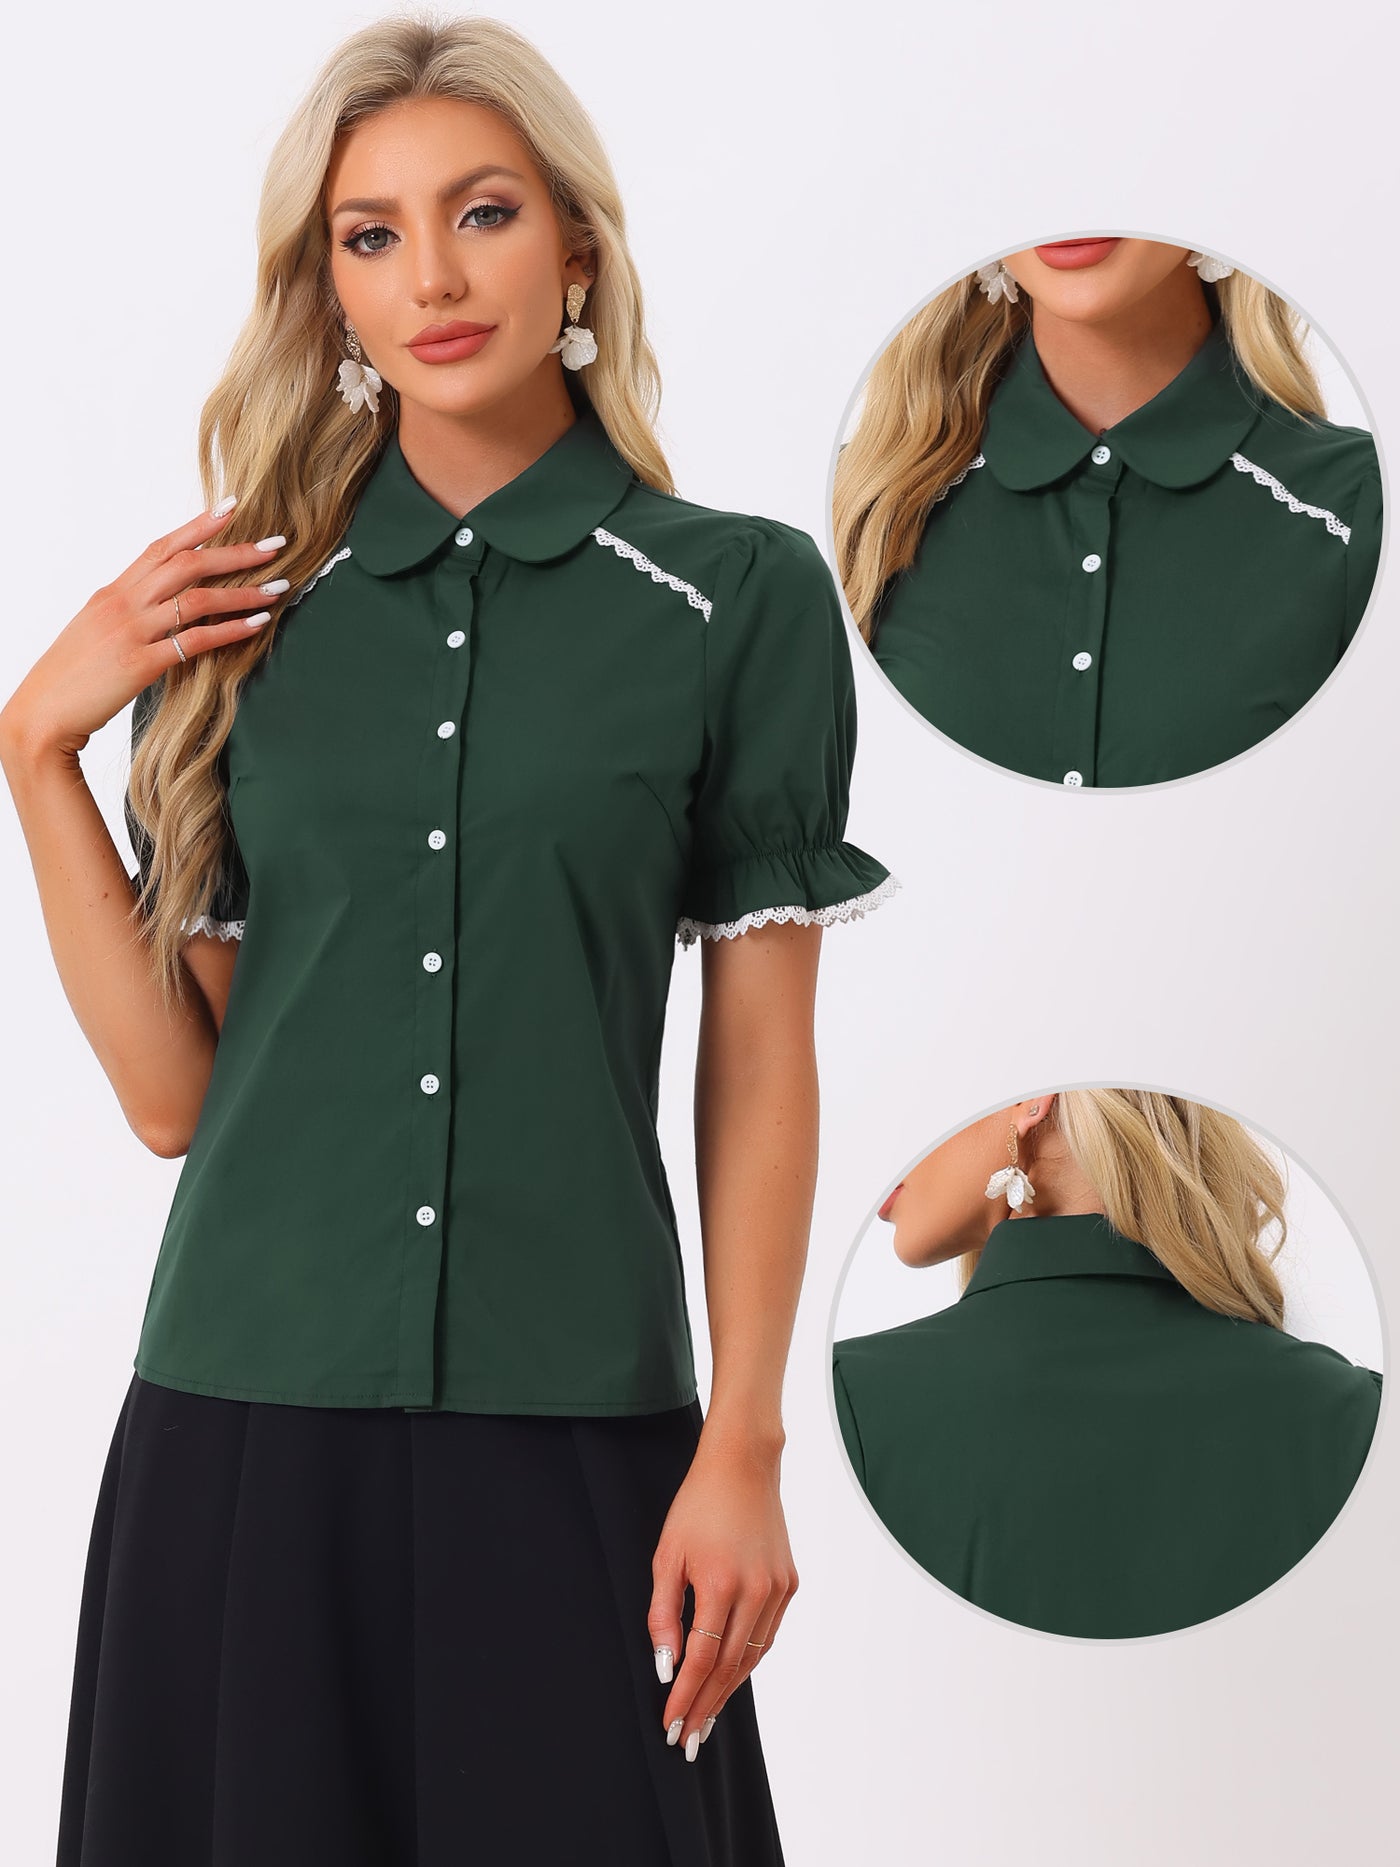 Allegra K Vintage Peter Pan Collar Blouse Short Sleeve Button Down Shirt